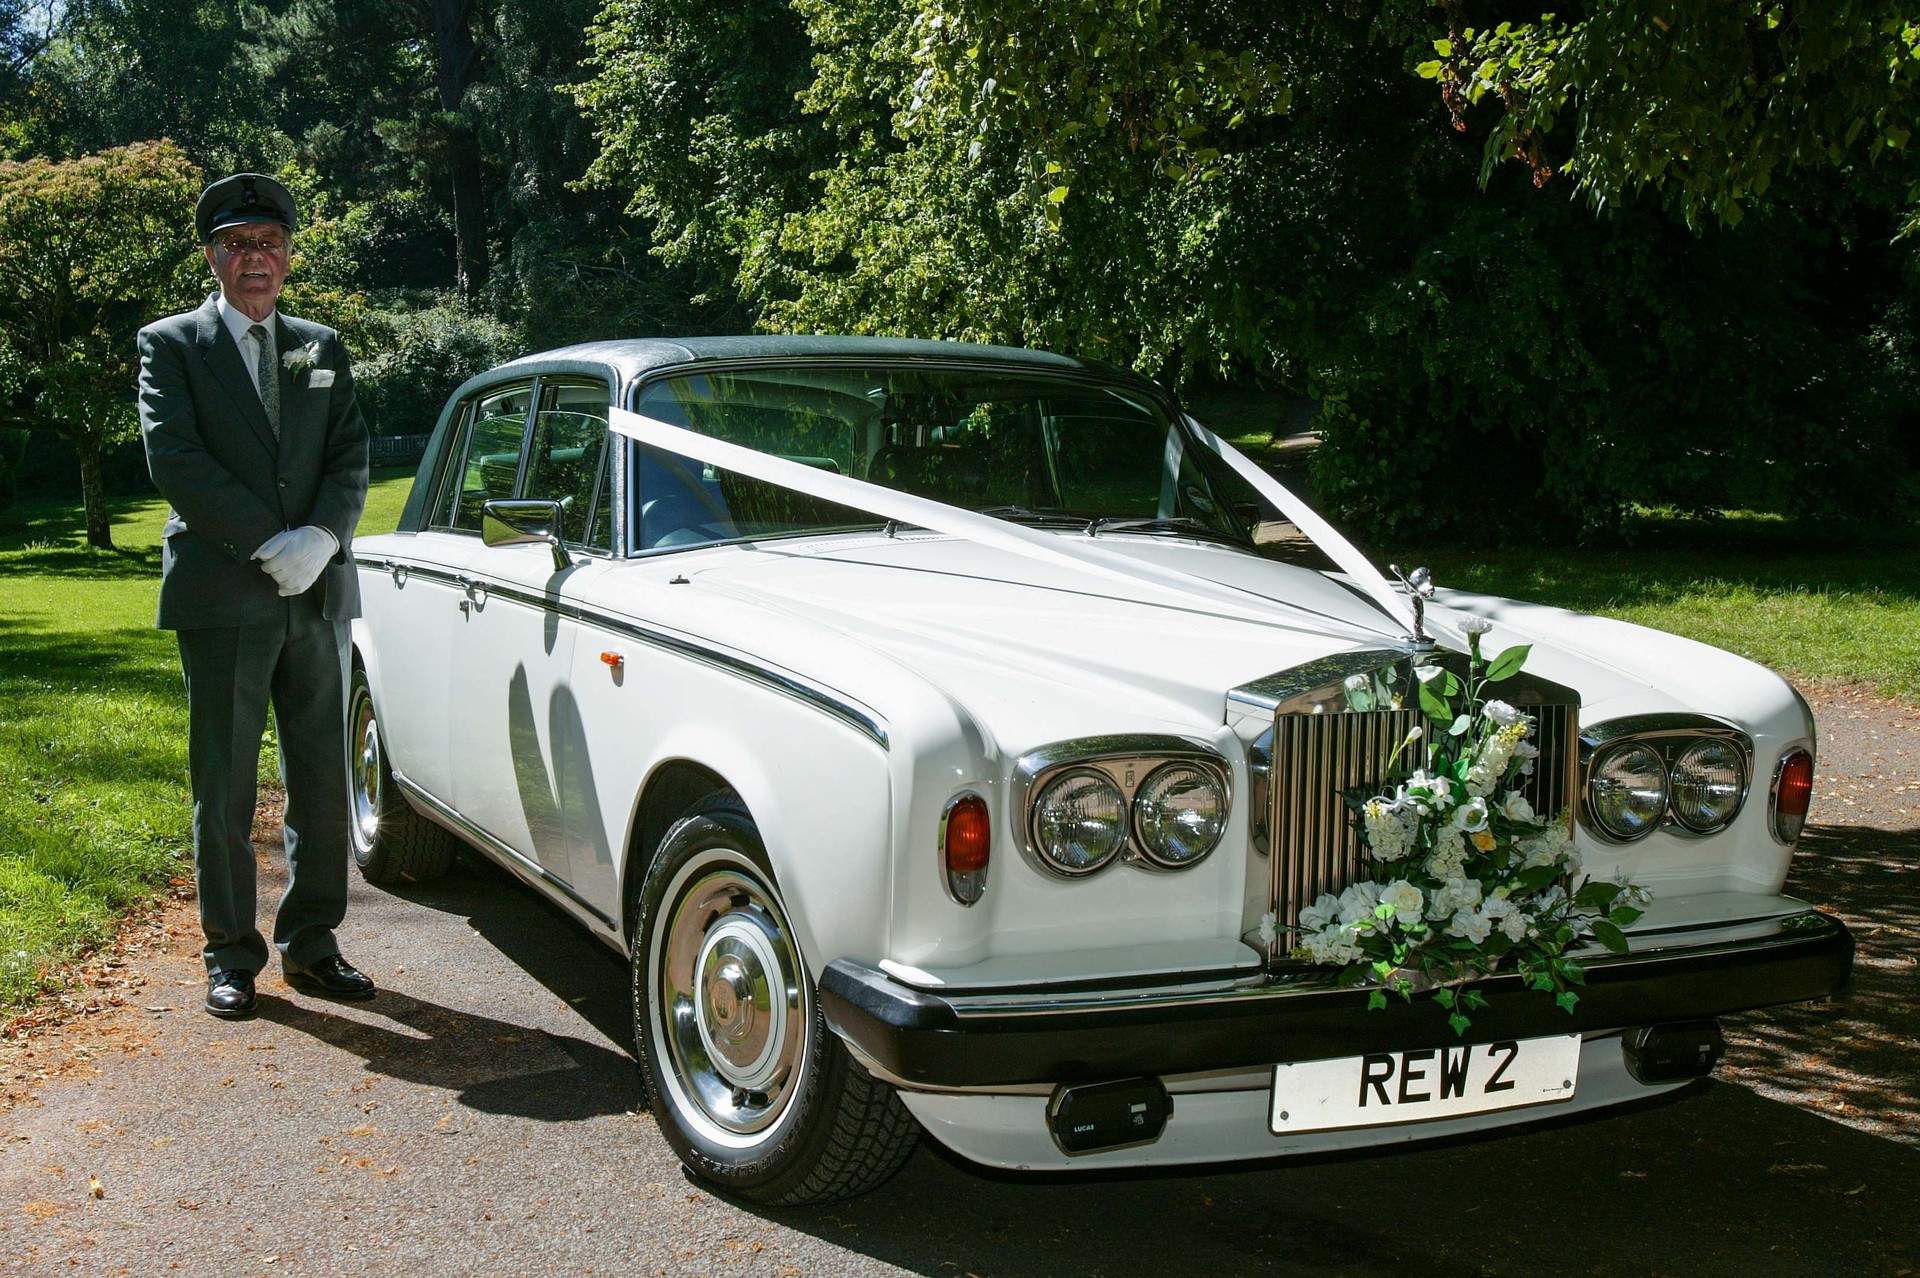 White Rolls-Royce wedding car